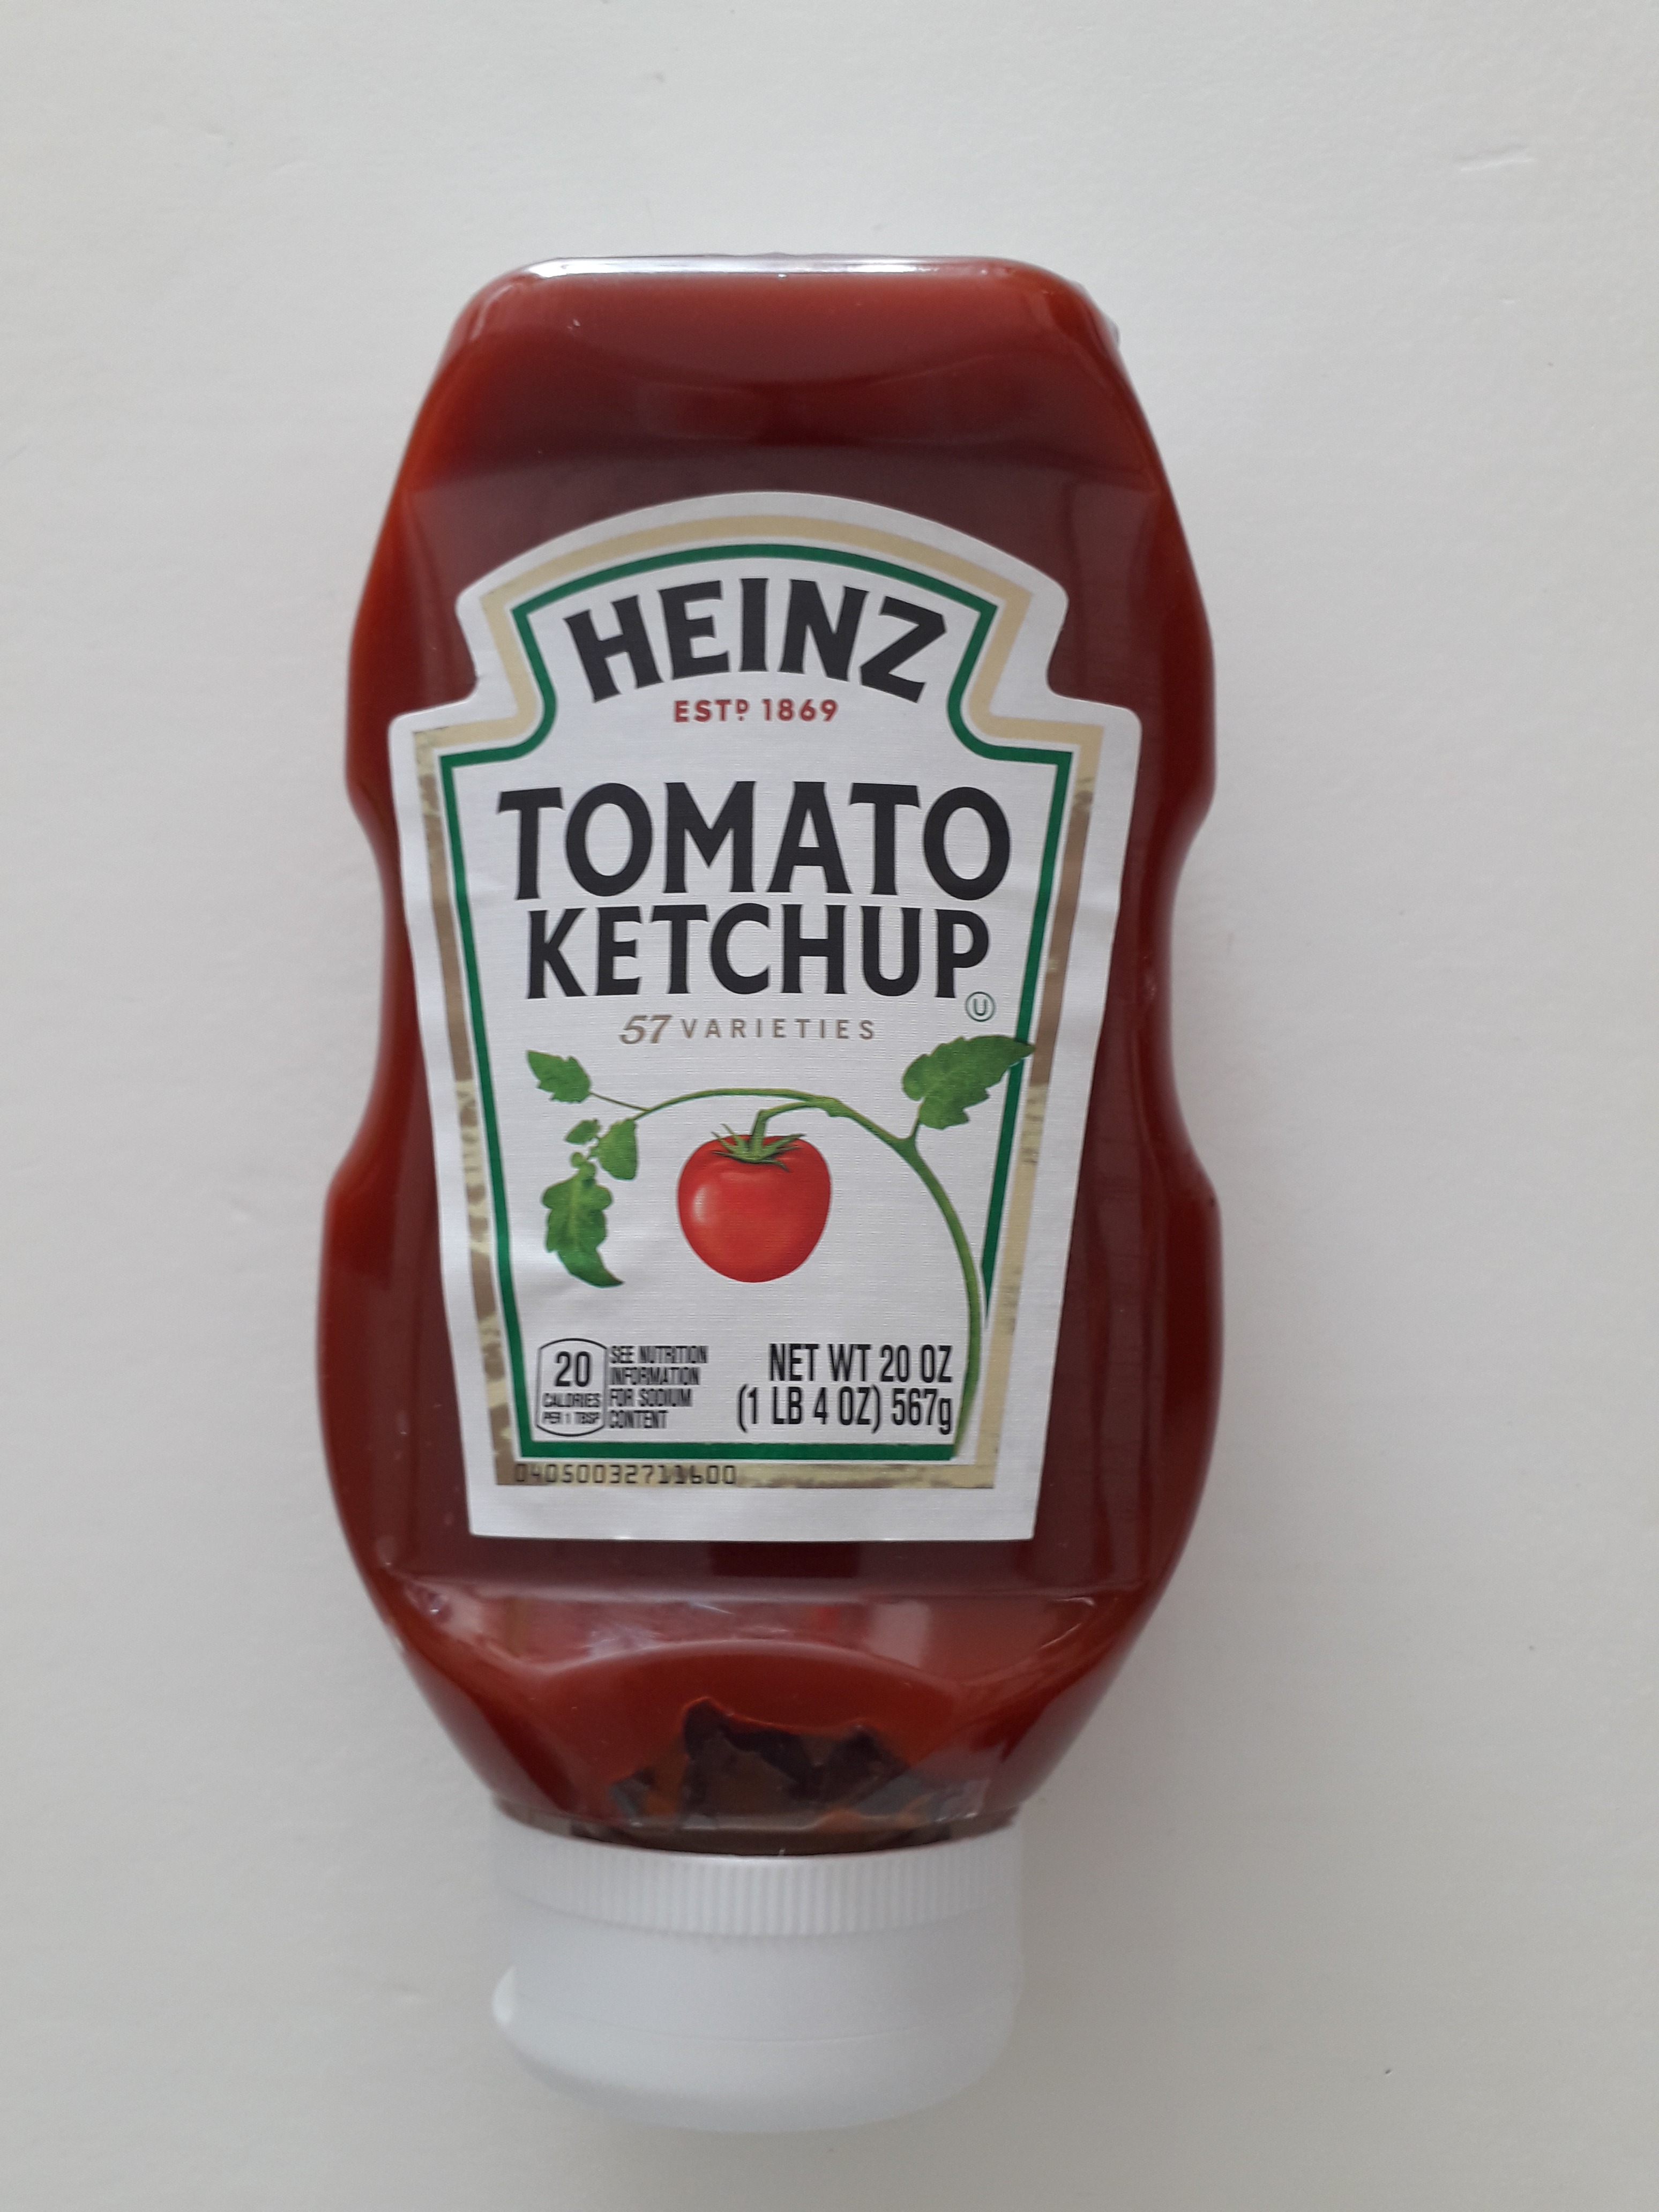 HCMTương Cà Heinz- Tomato ketchup 567g -Expiry date 26 07 2023